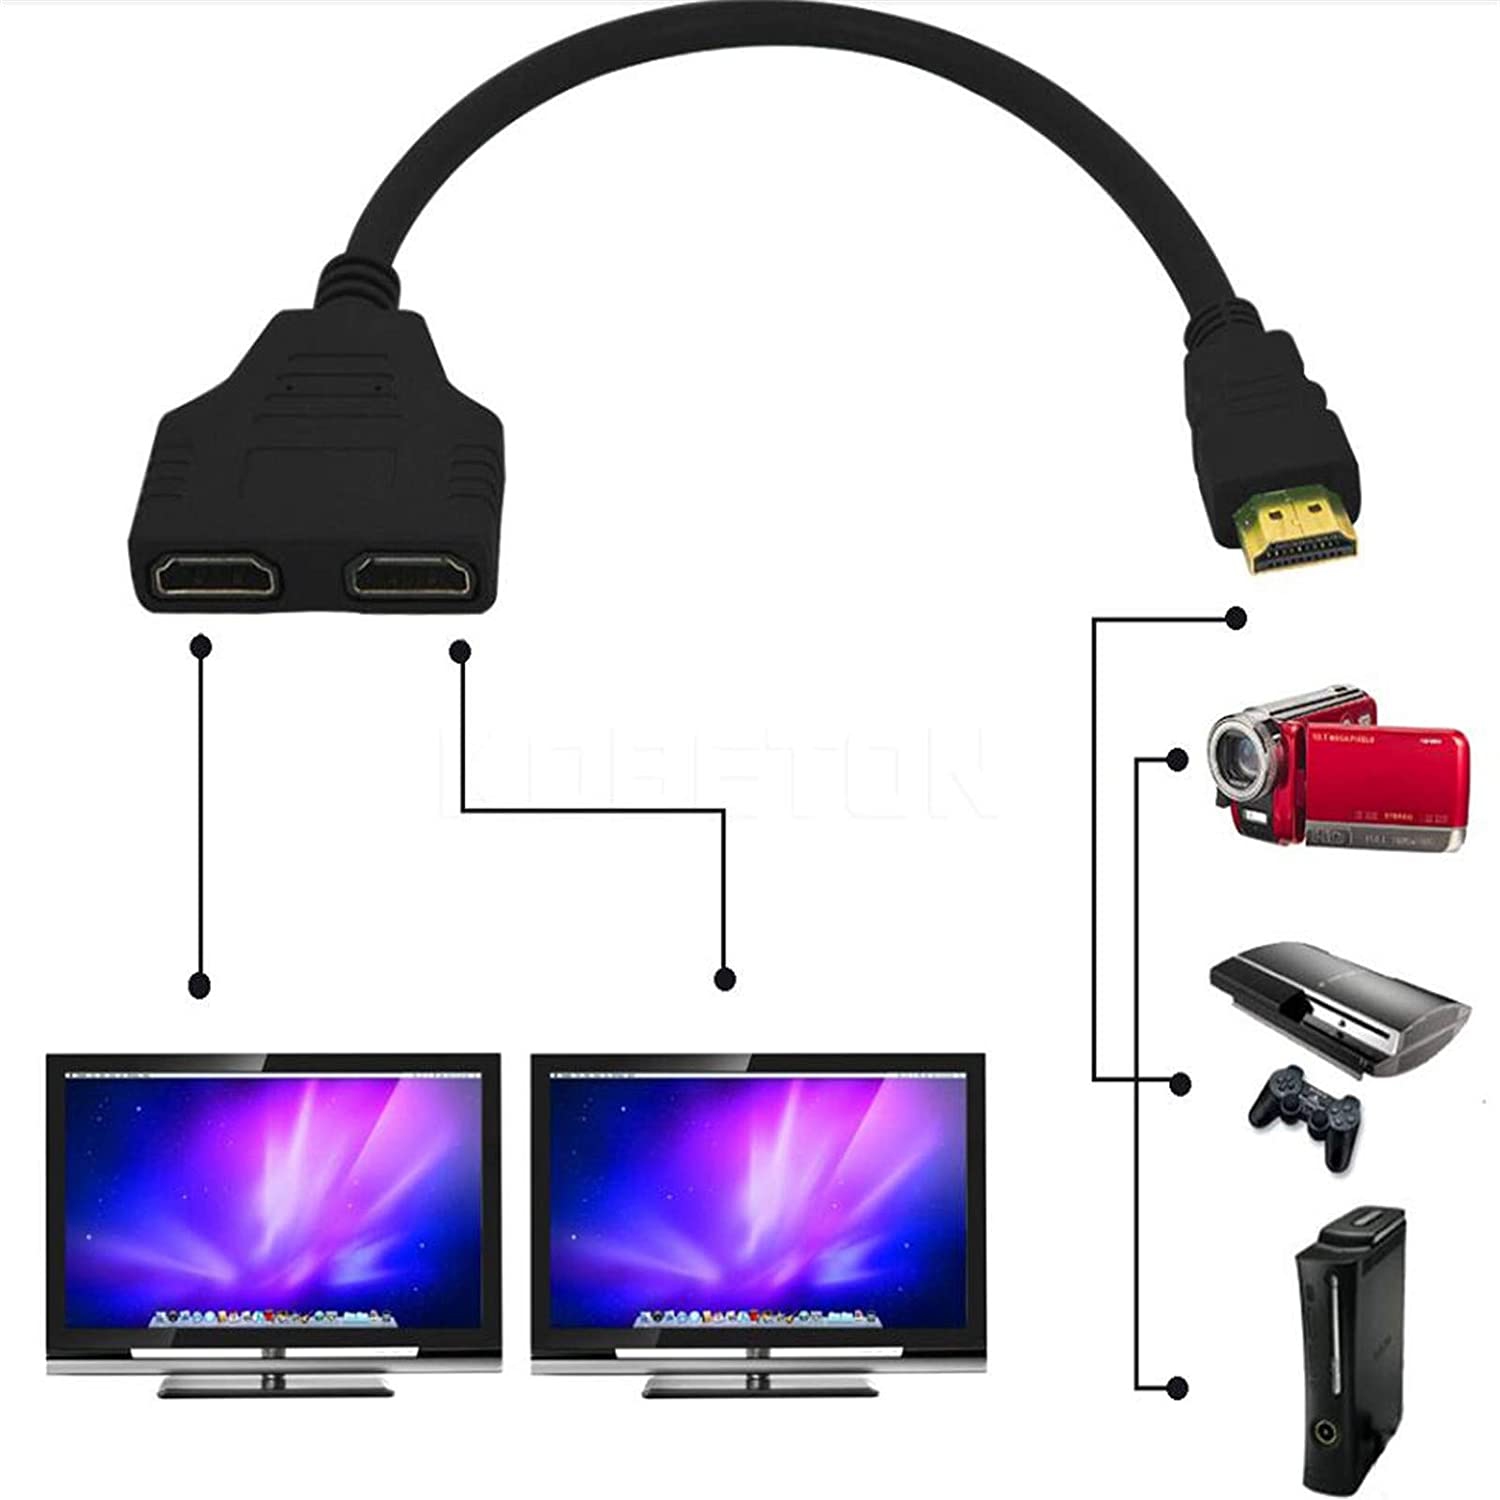 Câble HDMI – Câble adaptateur HDMI double hdmi mâle à double hdmi femelle 1  à 2 voies pour HDMI HD, 1 entrées 2 sorties/câble adaptateur HDMI double  HDMI